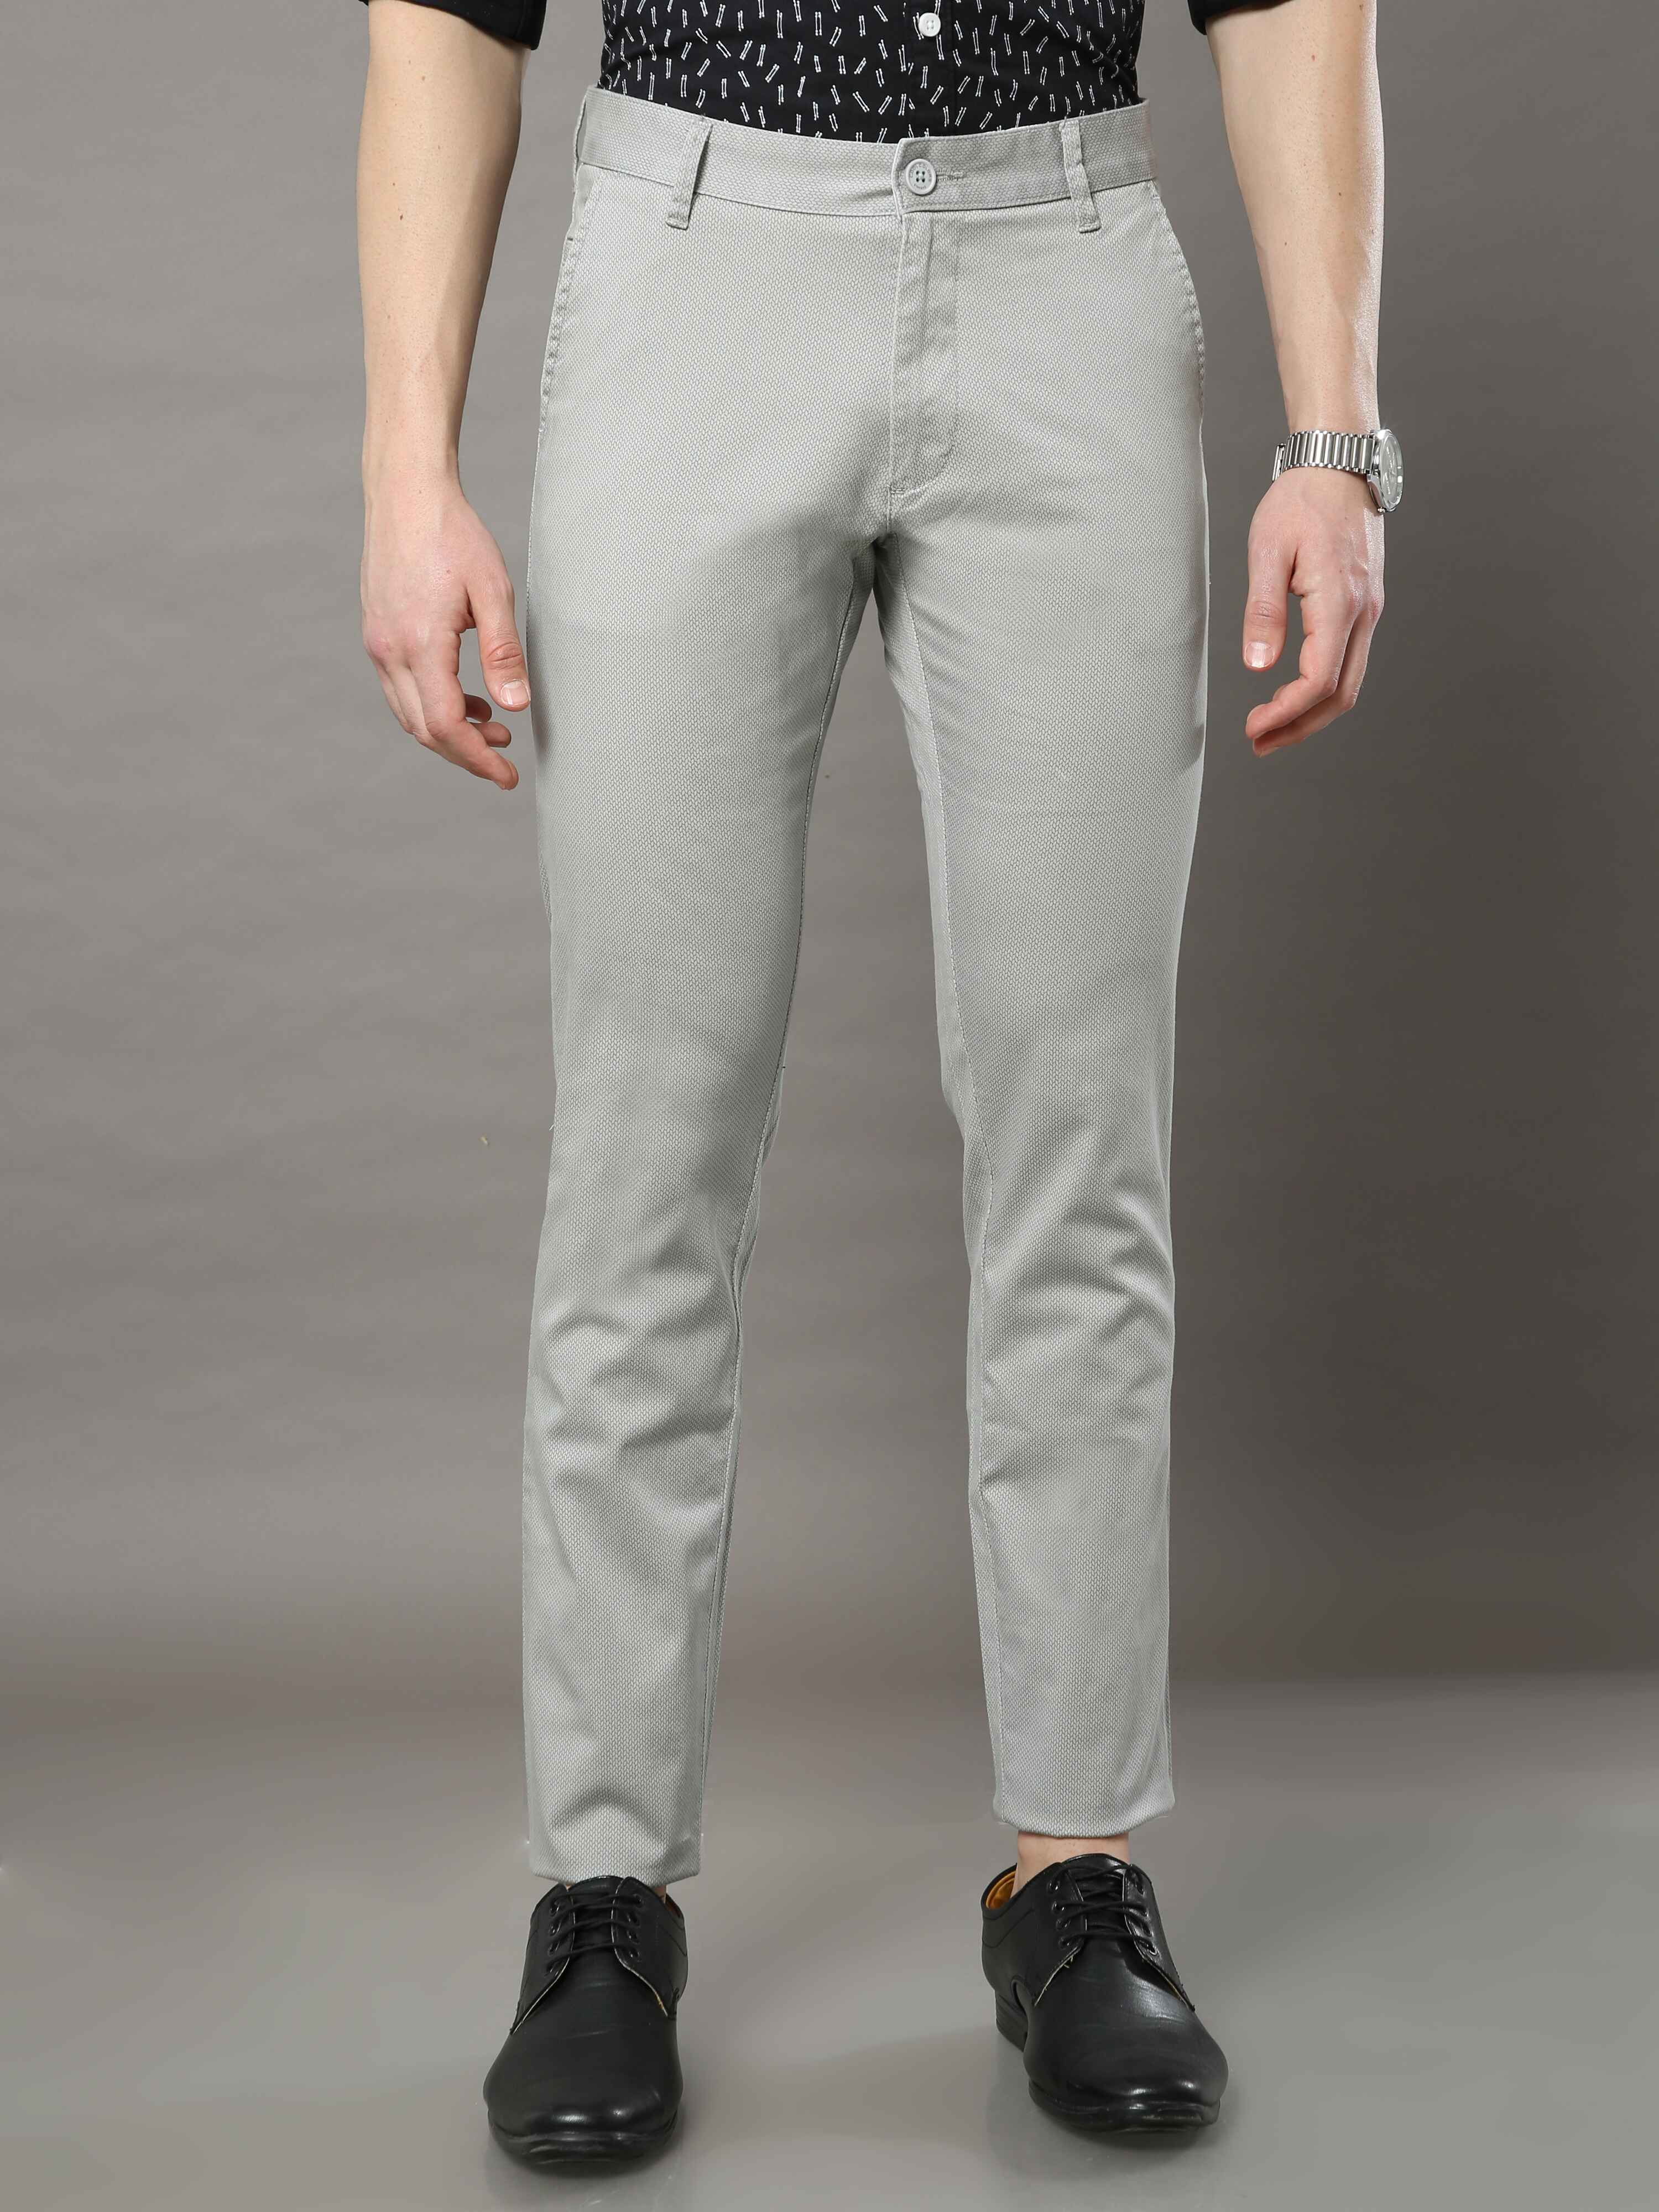 Buy Beige Formal Trousers For Men Online @ Best Prices in India | Uniform  Bucket | UNIFORM BUCKET